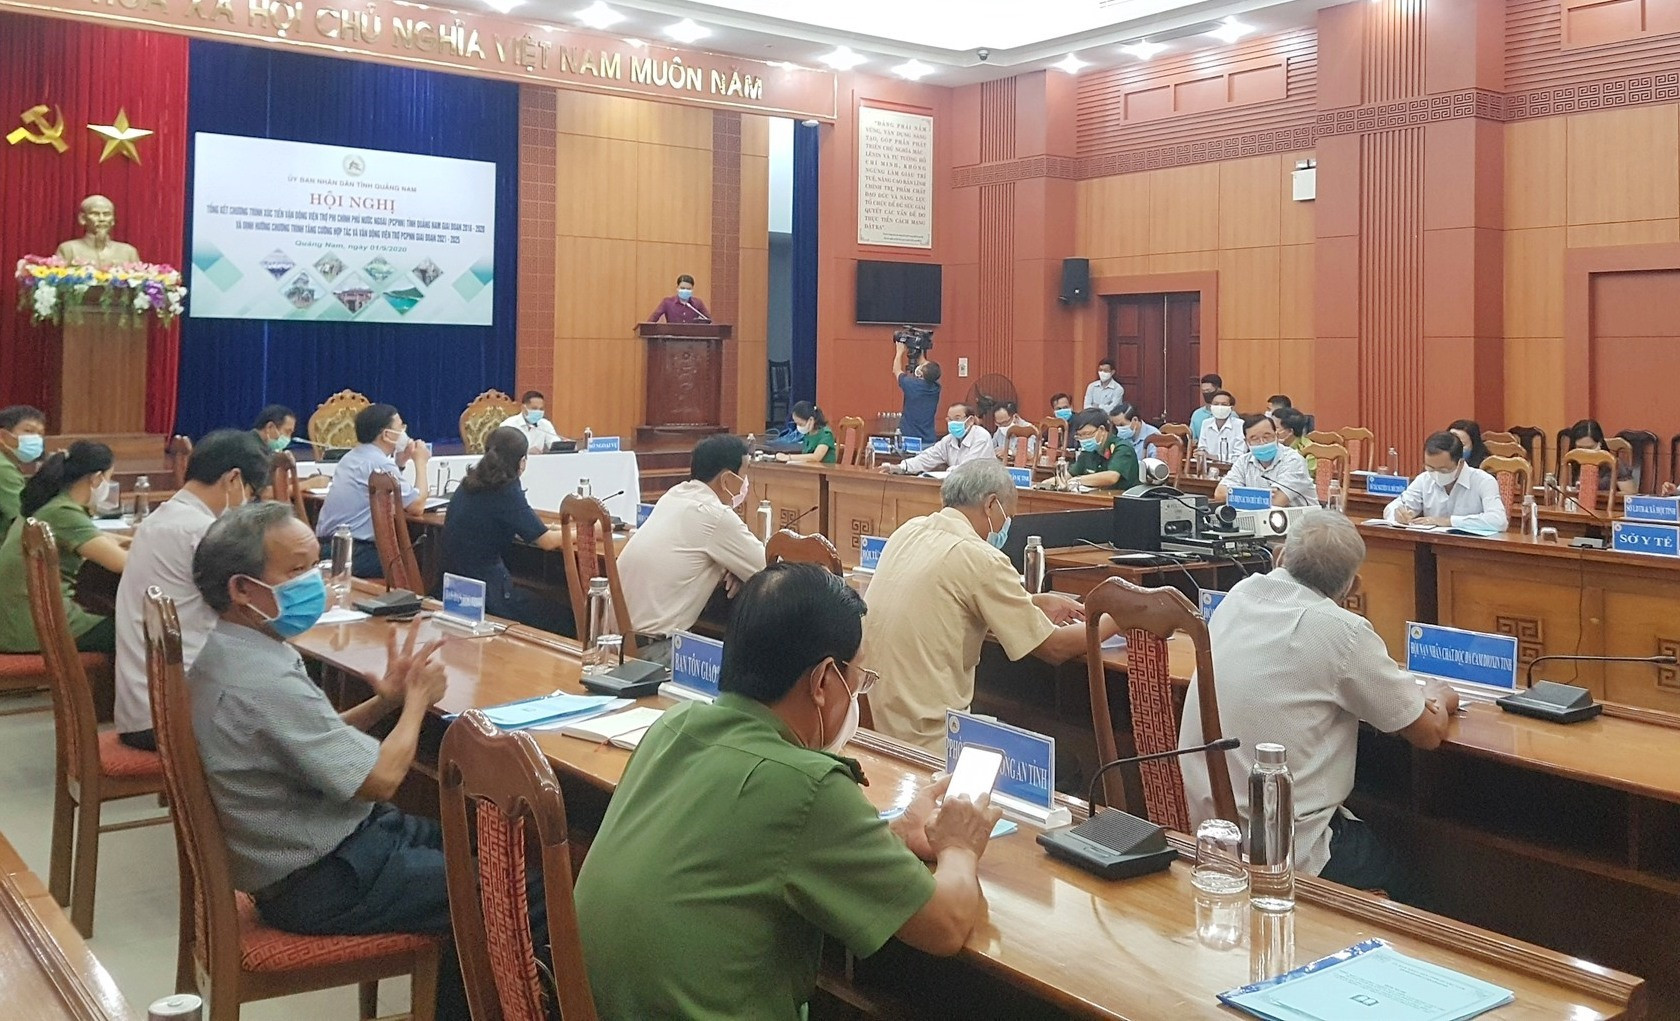 UBND tỉnh vừa tổng kết thực hiện Chương trình xúc tiến vận động viện trợ phi chính phủ nước ngoài (PCPNN) tại Quảng Nam giai đoạn 2016 - 2020.